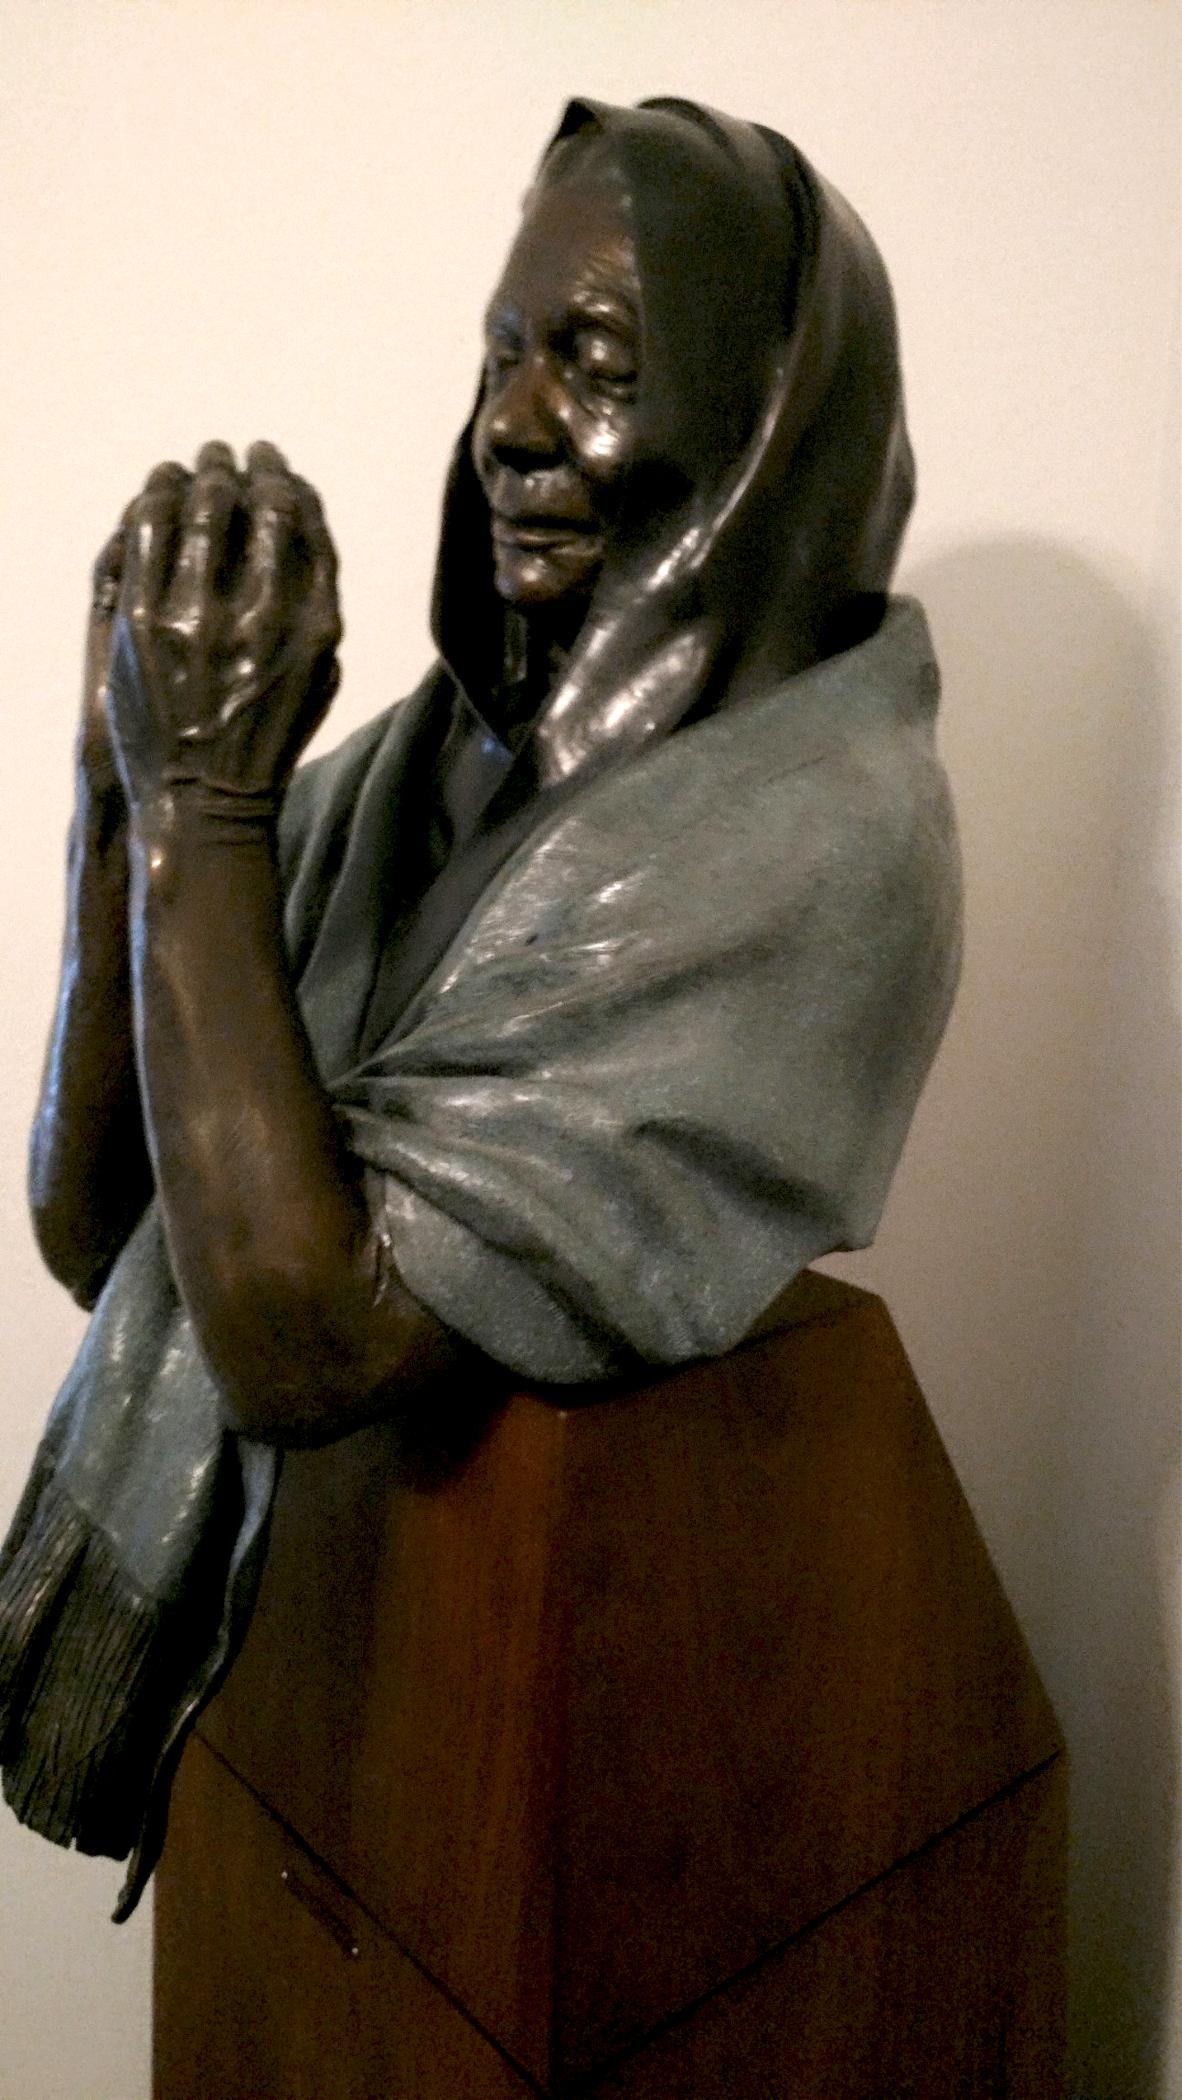 Pfad der Gebete von Denny Haskew
Figurative weibliche Büste auf maßgefertigtem Sockel 66x16x20